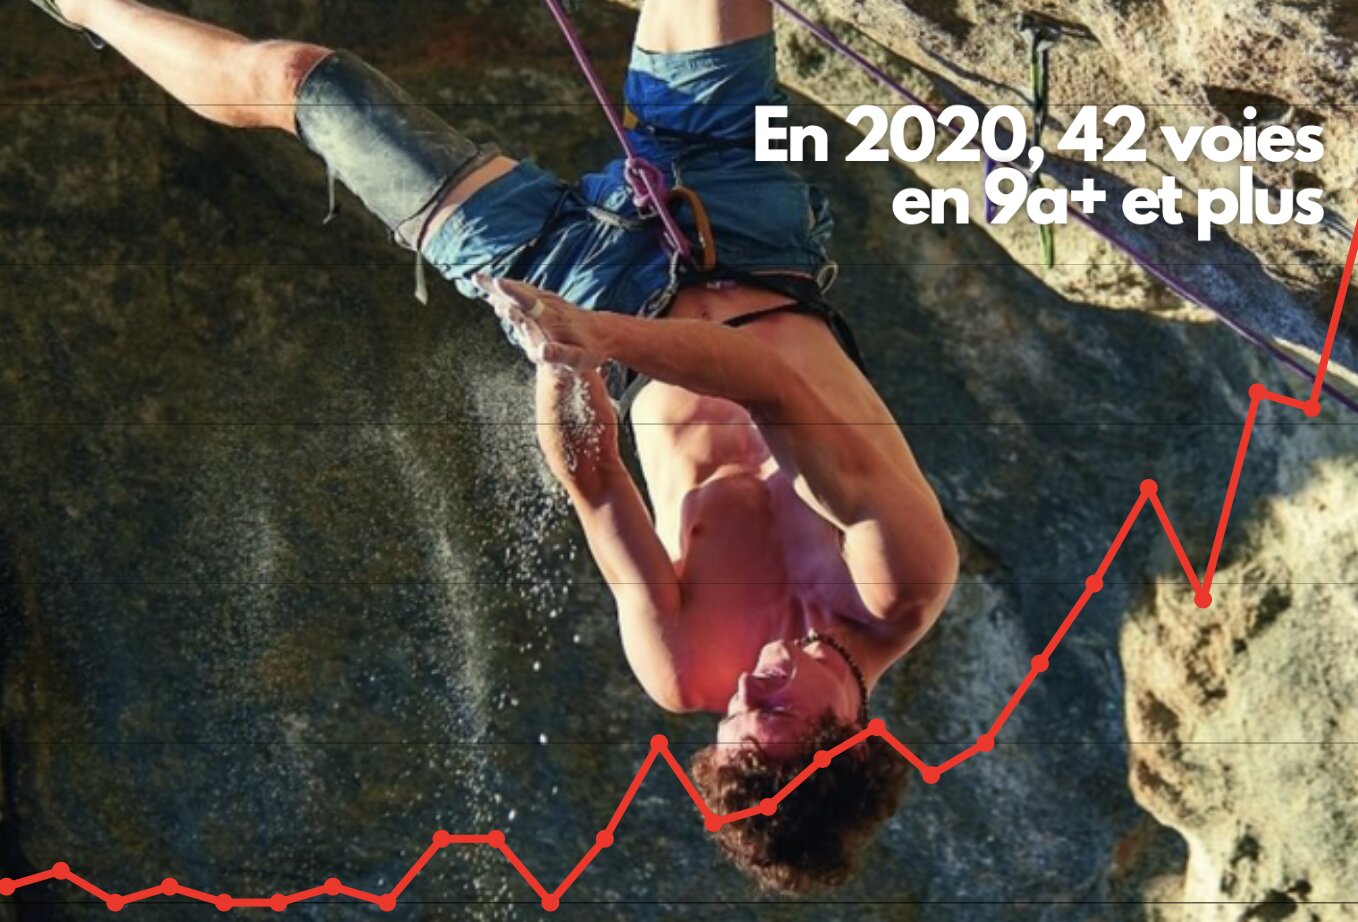 Le nombre de grimpeur dans le 9a+ en 2020 à complètement explosé !